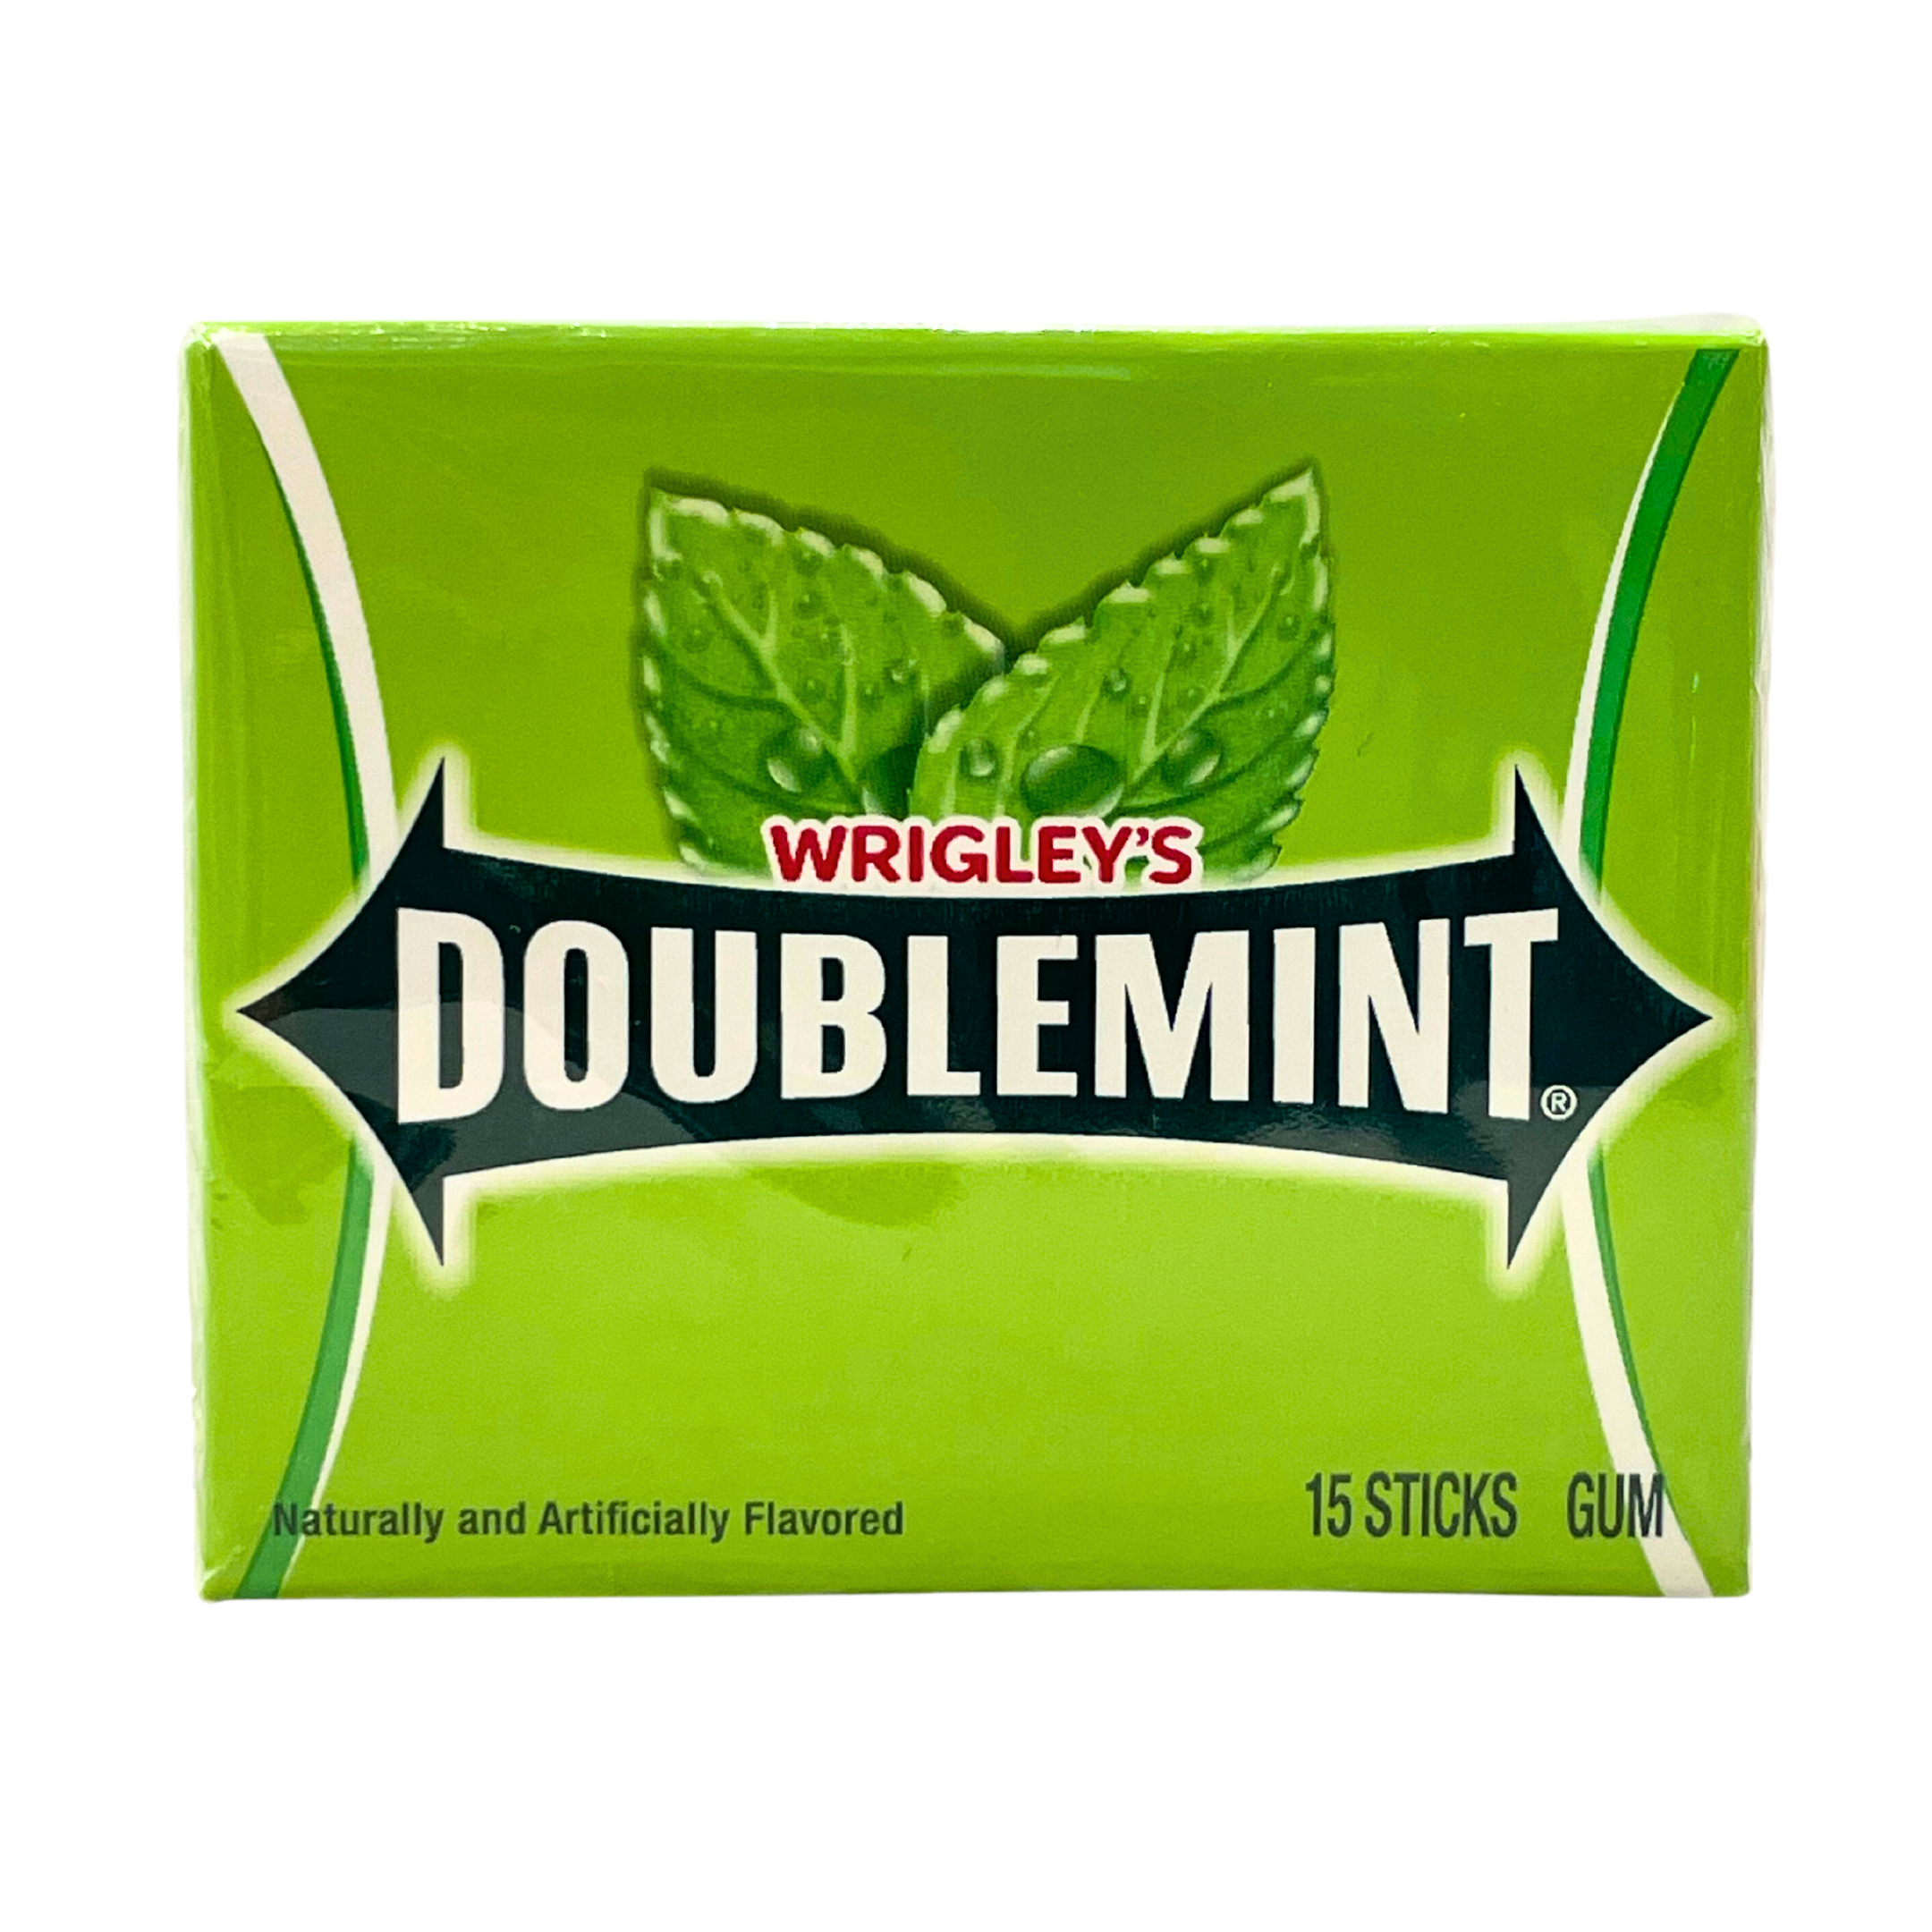 Wrigley's - Doublemint gum